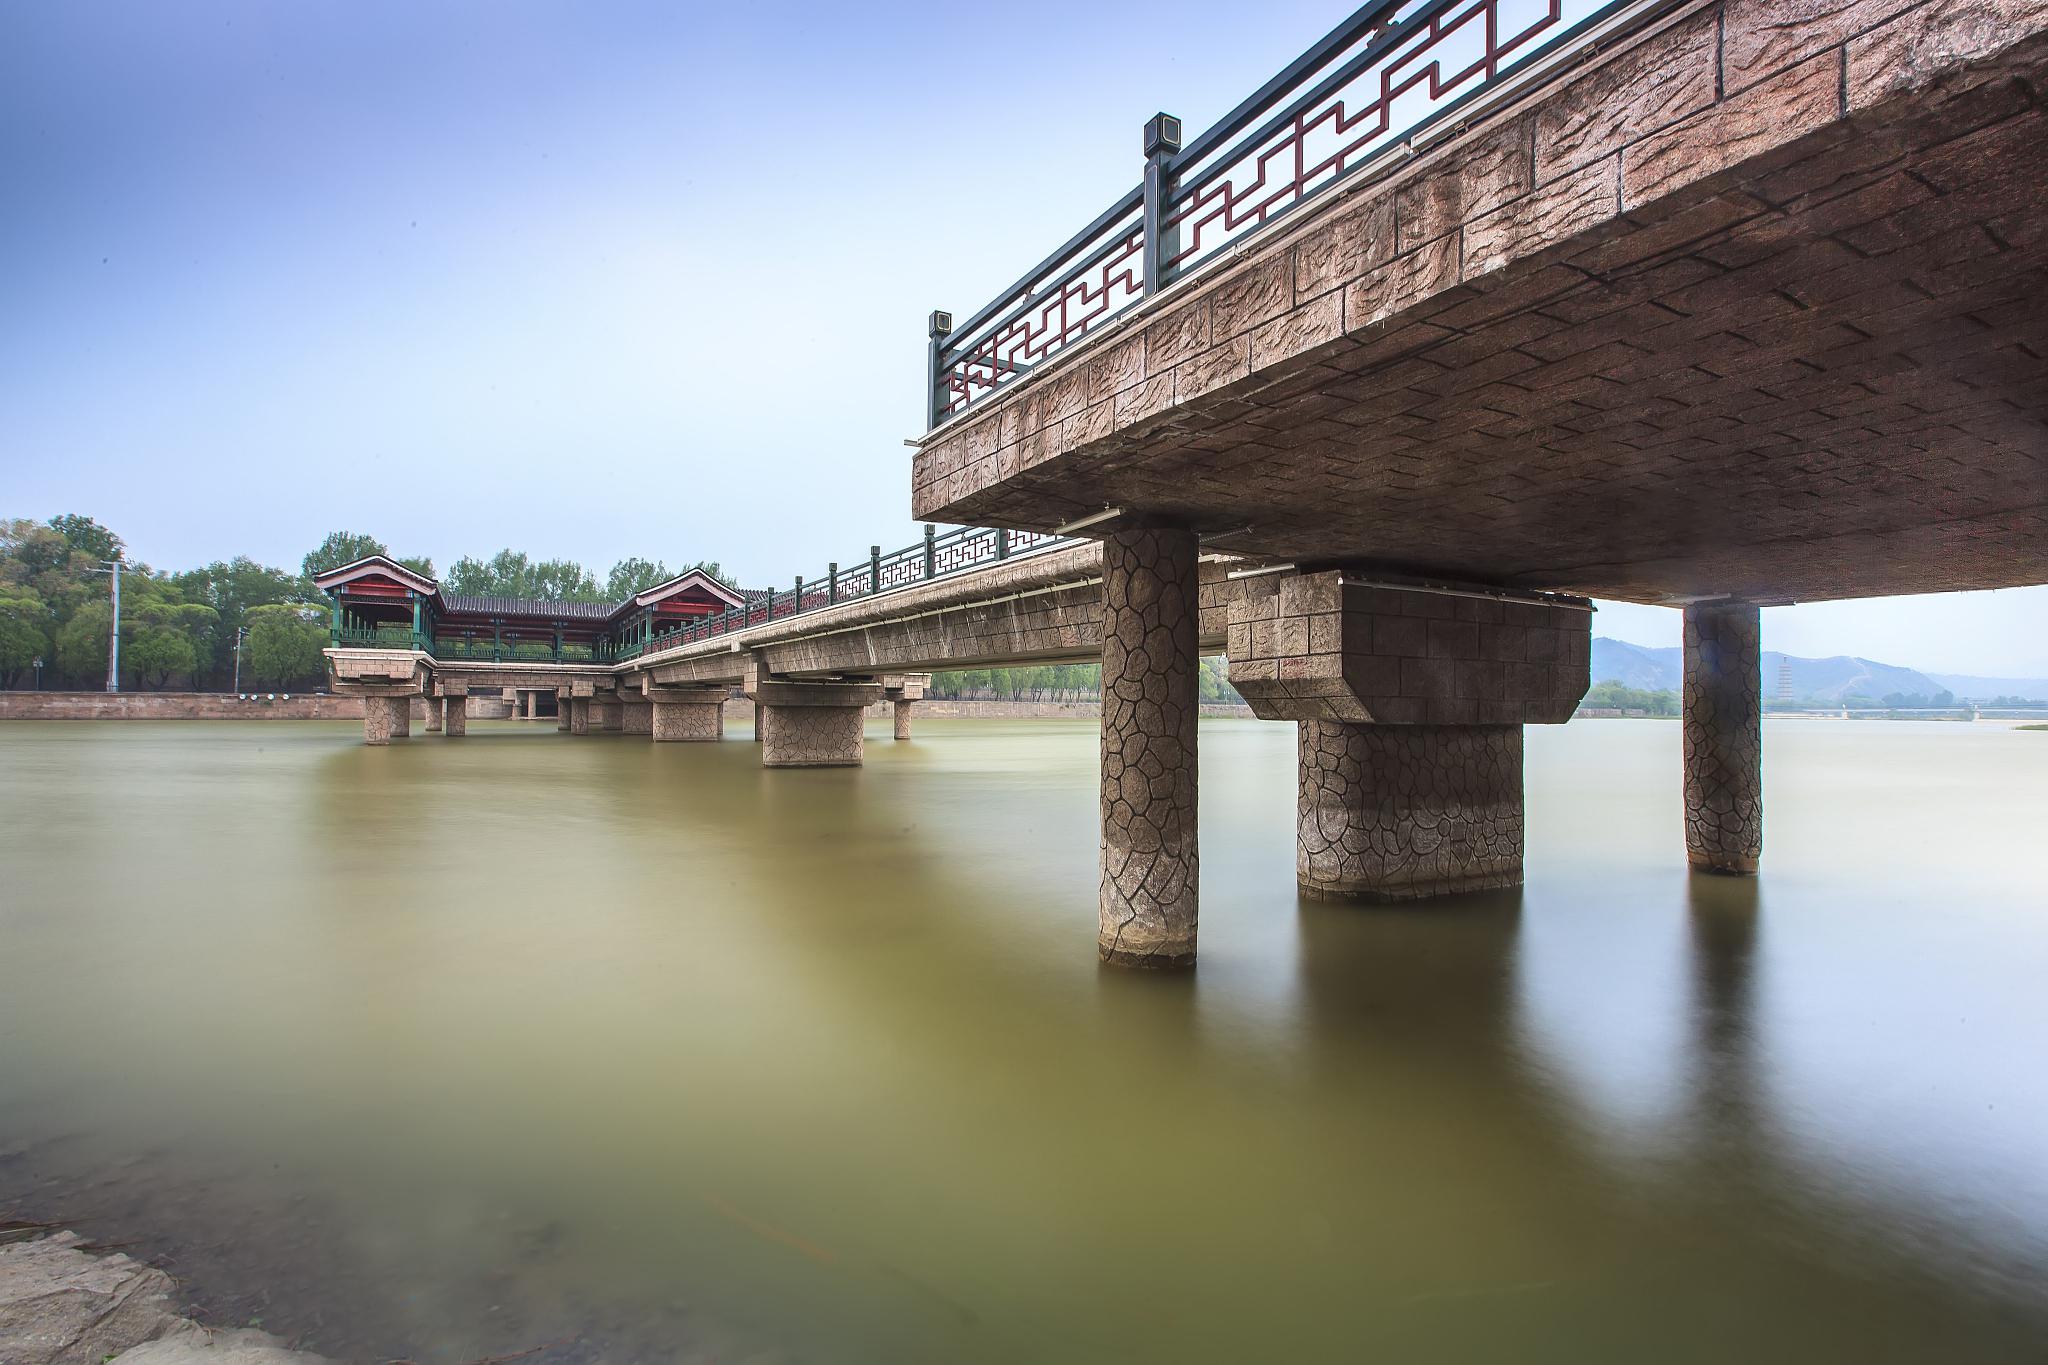 咸阳湖旅游攻略 咸阳湖位于陕西省咸阳市渭城区渭阳路全段,是陕西省